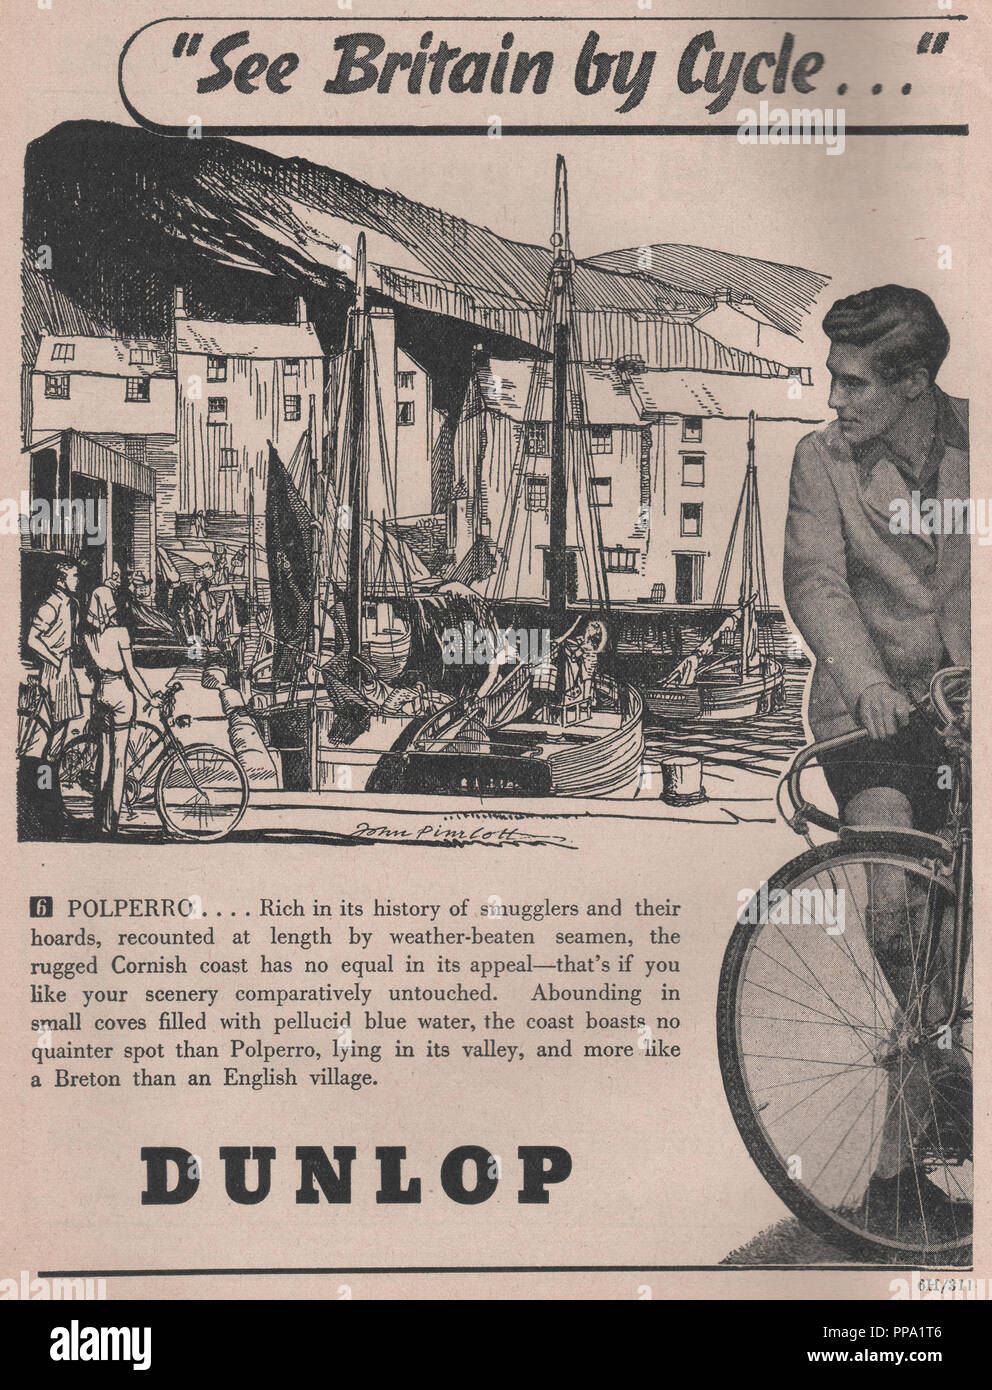 Mancha bicicleta DUNLOP